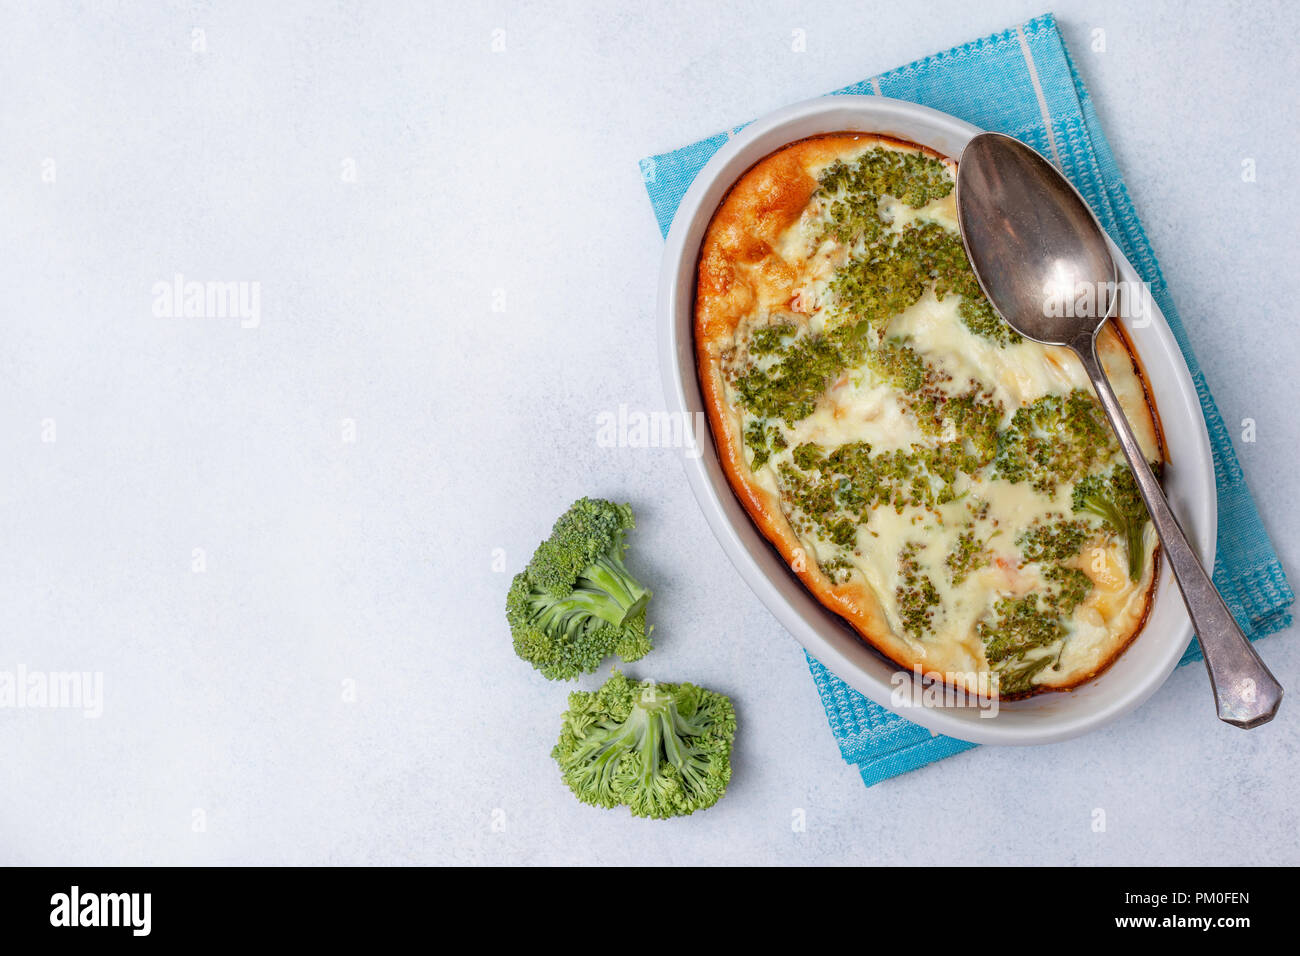 Petit déjeuner sain. Les brocolis, fromage, oeufs cocotte dans un bol pour la cuisson sur un fond de béton gris. Vue de dessus Banque D'Images